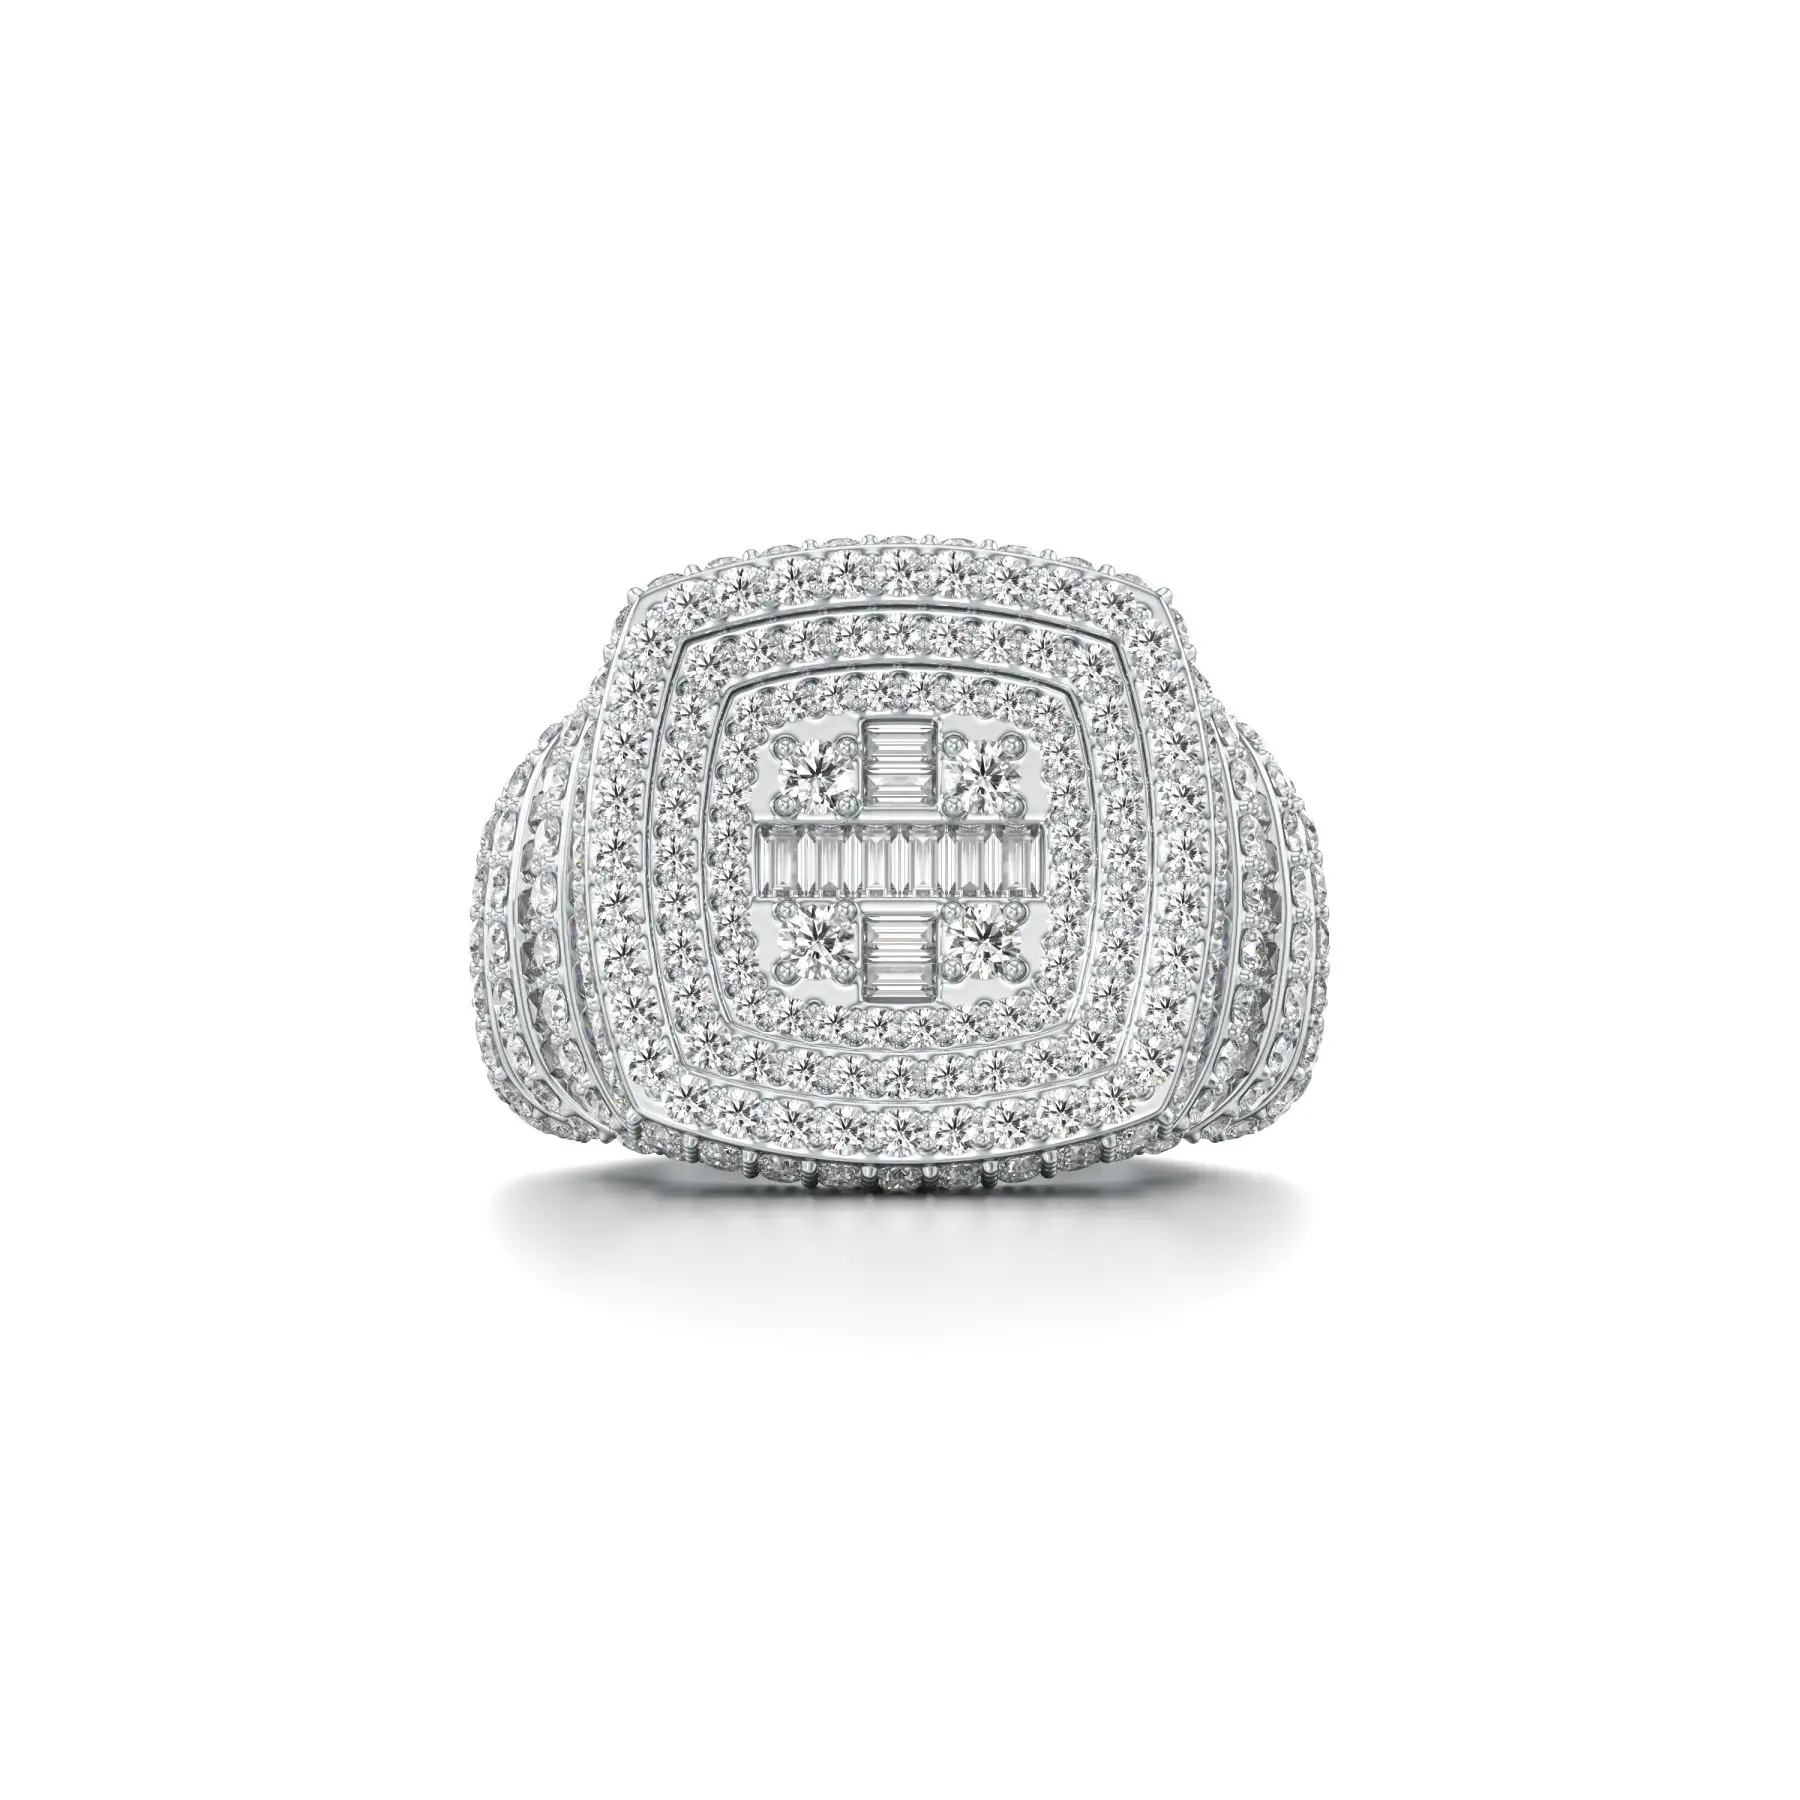 Blingy Beveled Diamond Ring in White 10k Gold